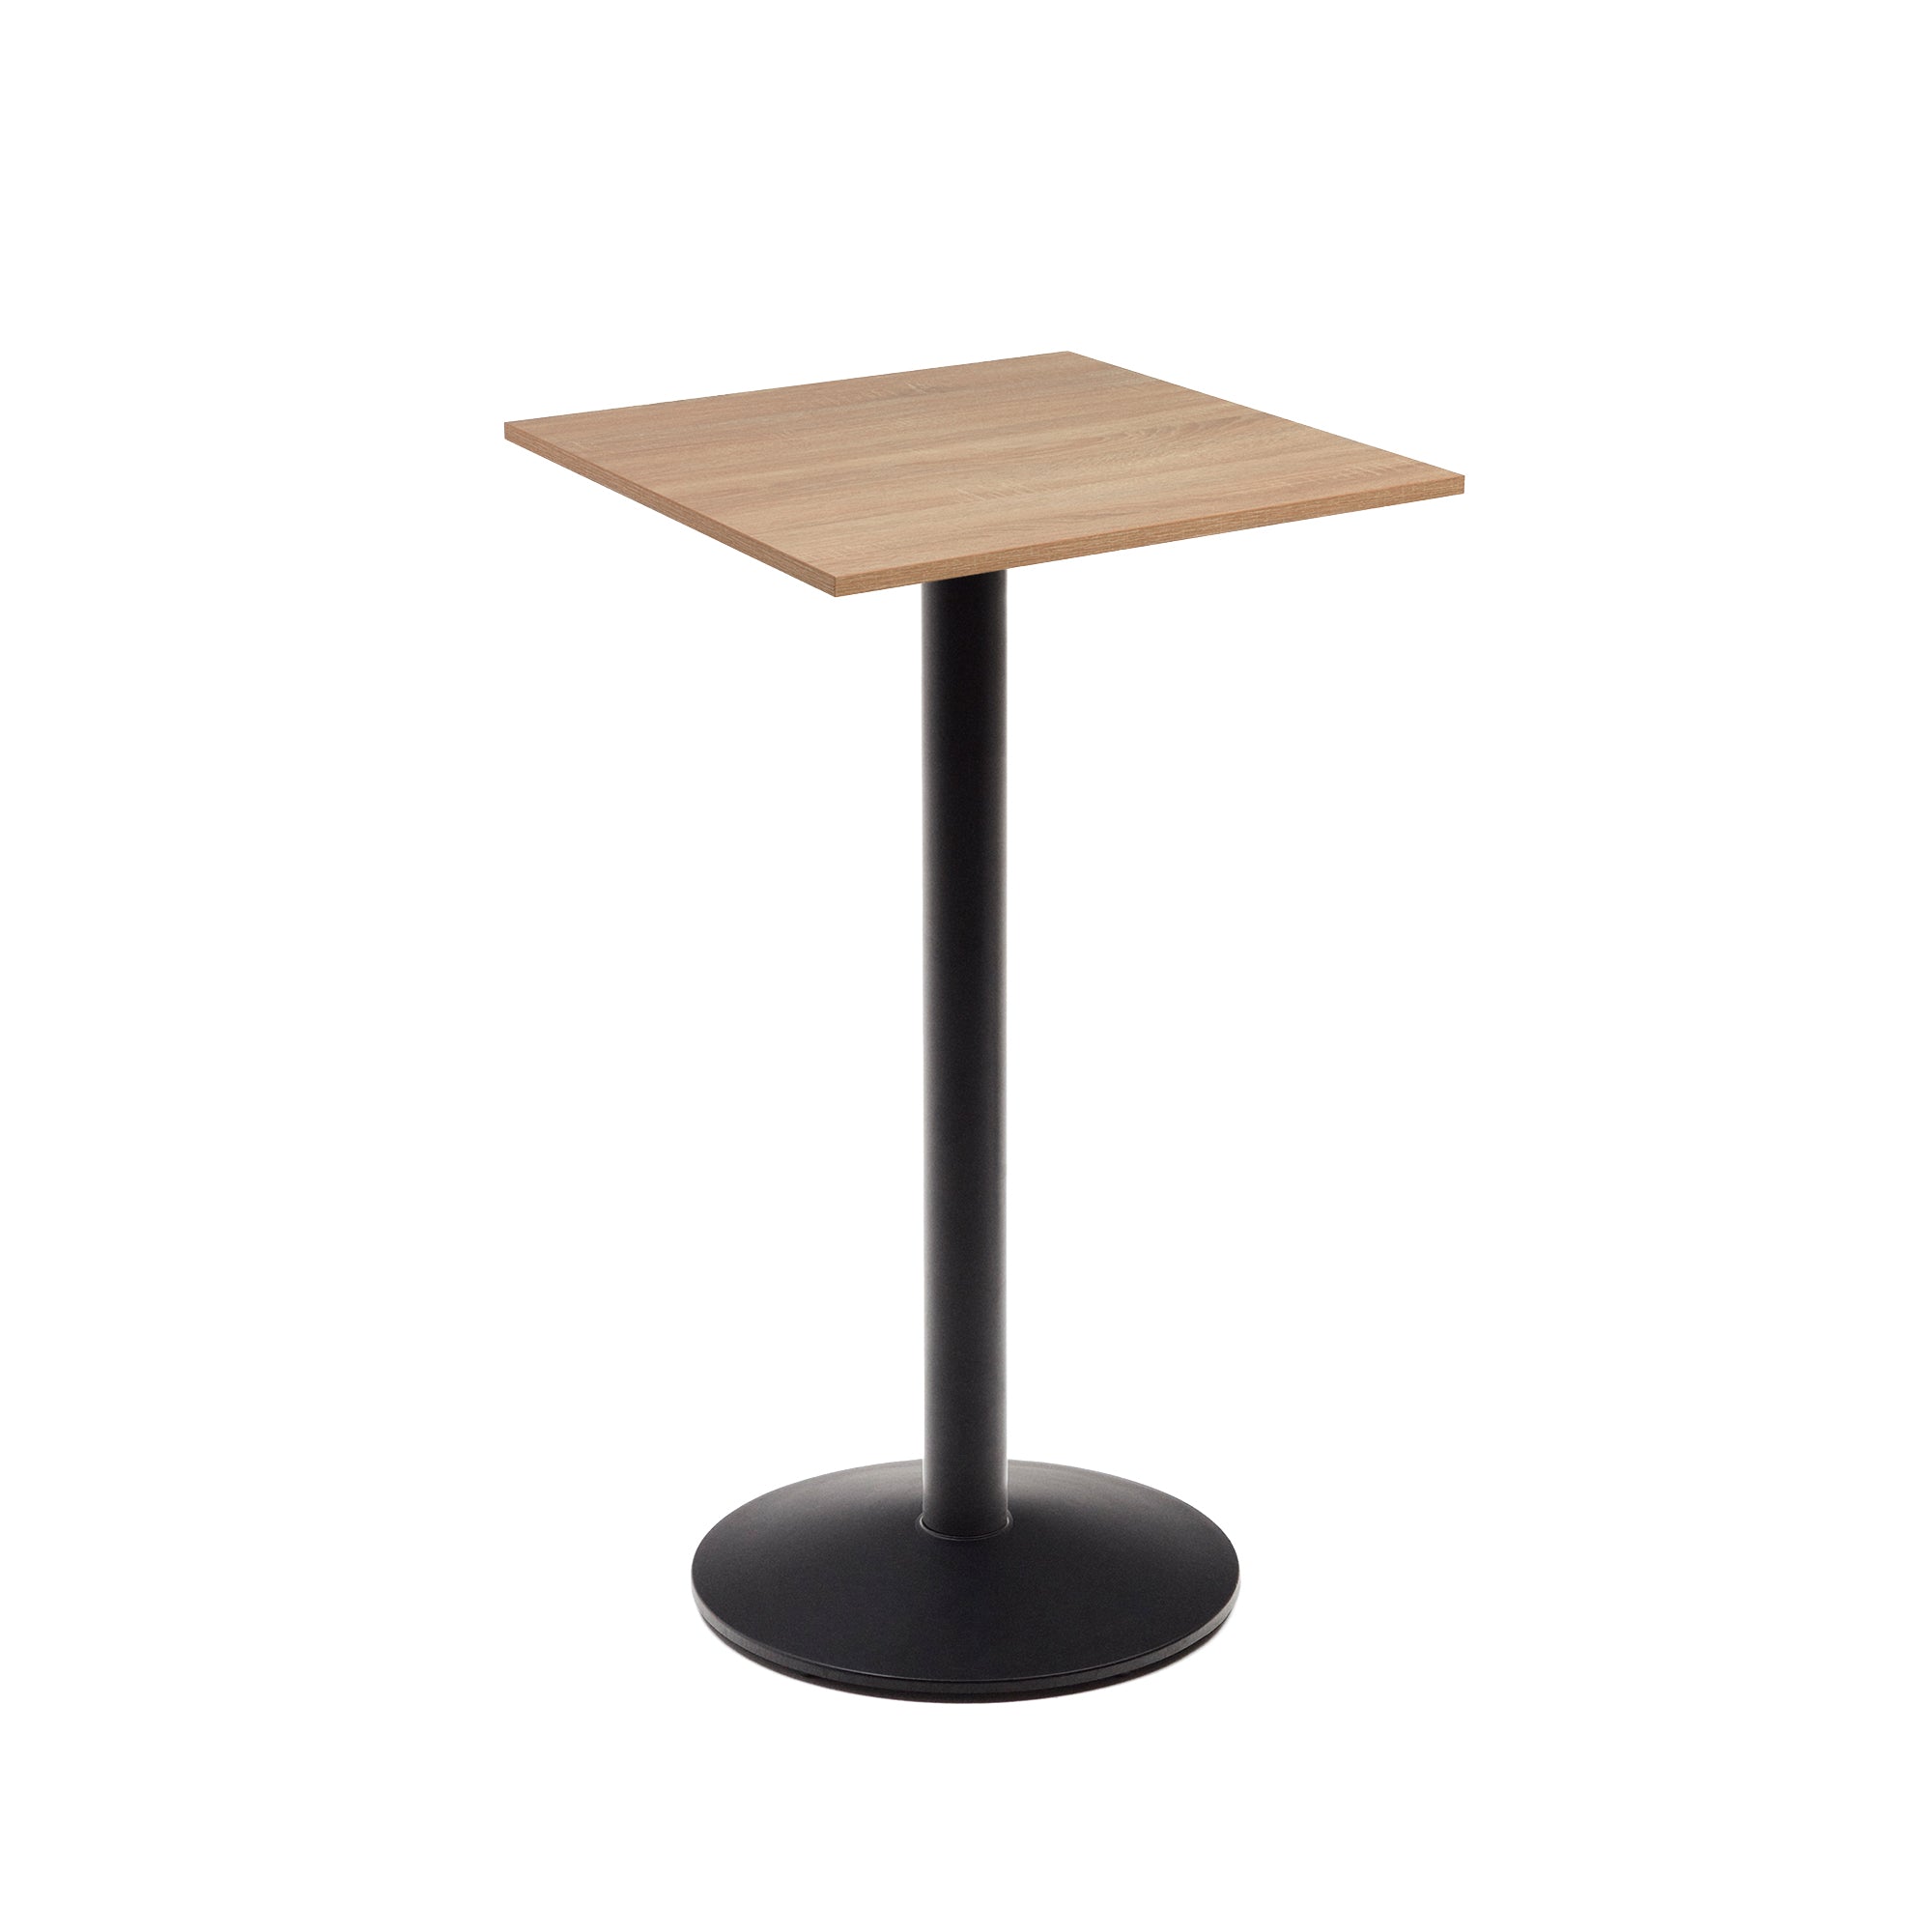 Esilda magas asztal, natúr melaminból, fekete festett fémlábbal, 60x60x96cm, 60x60x96cm